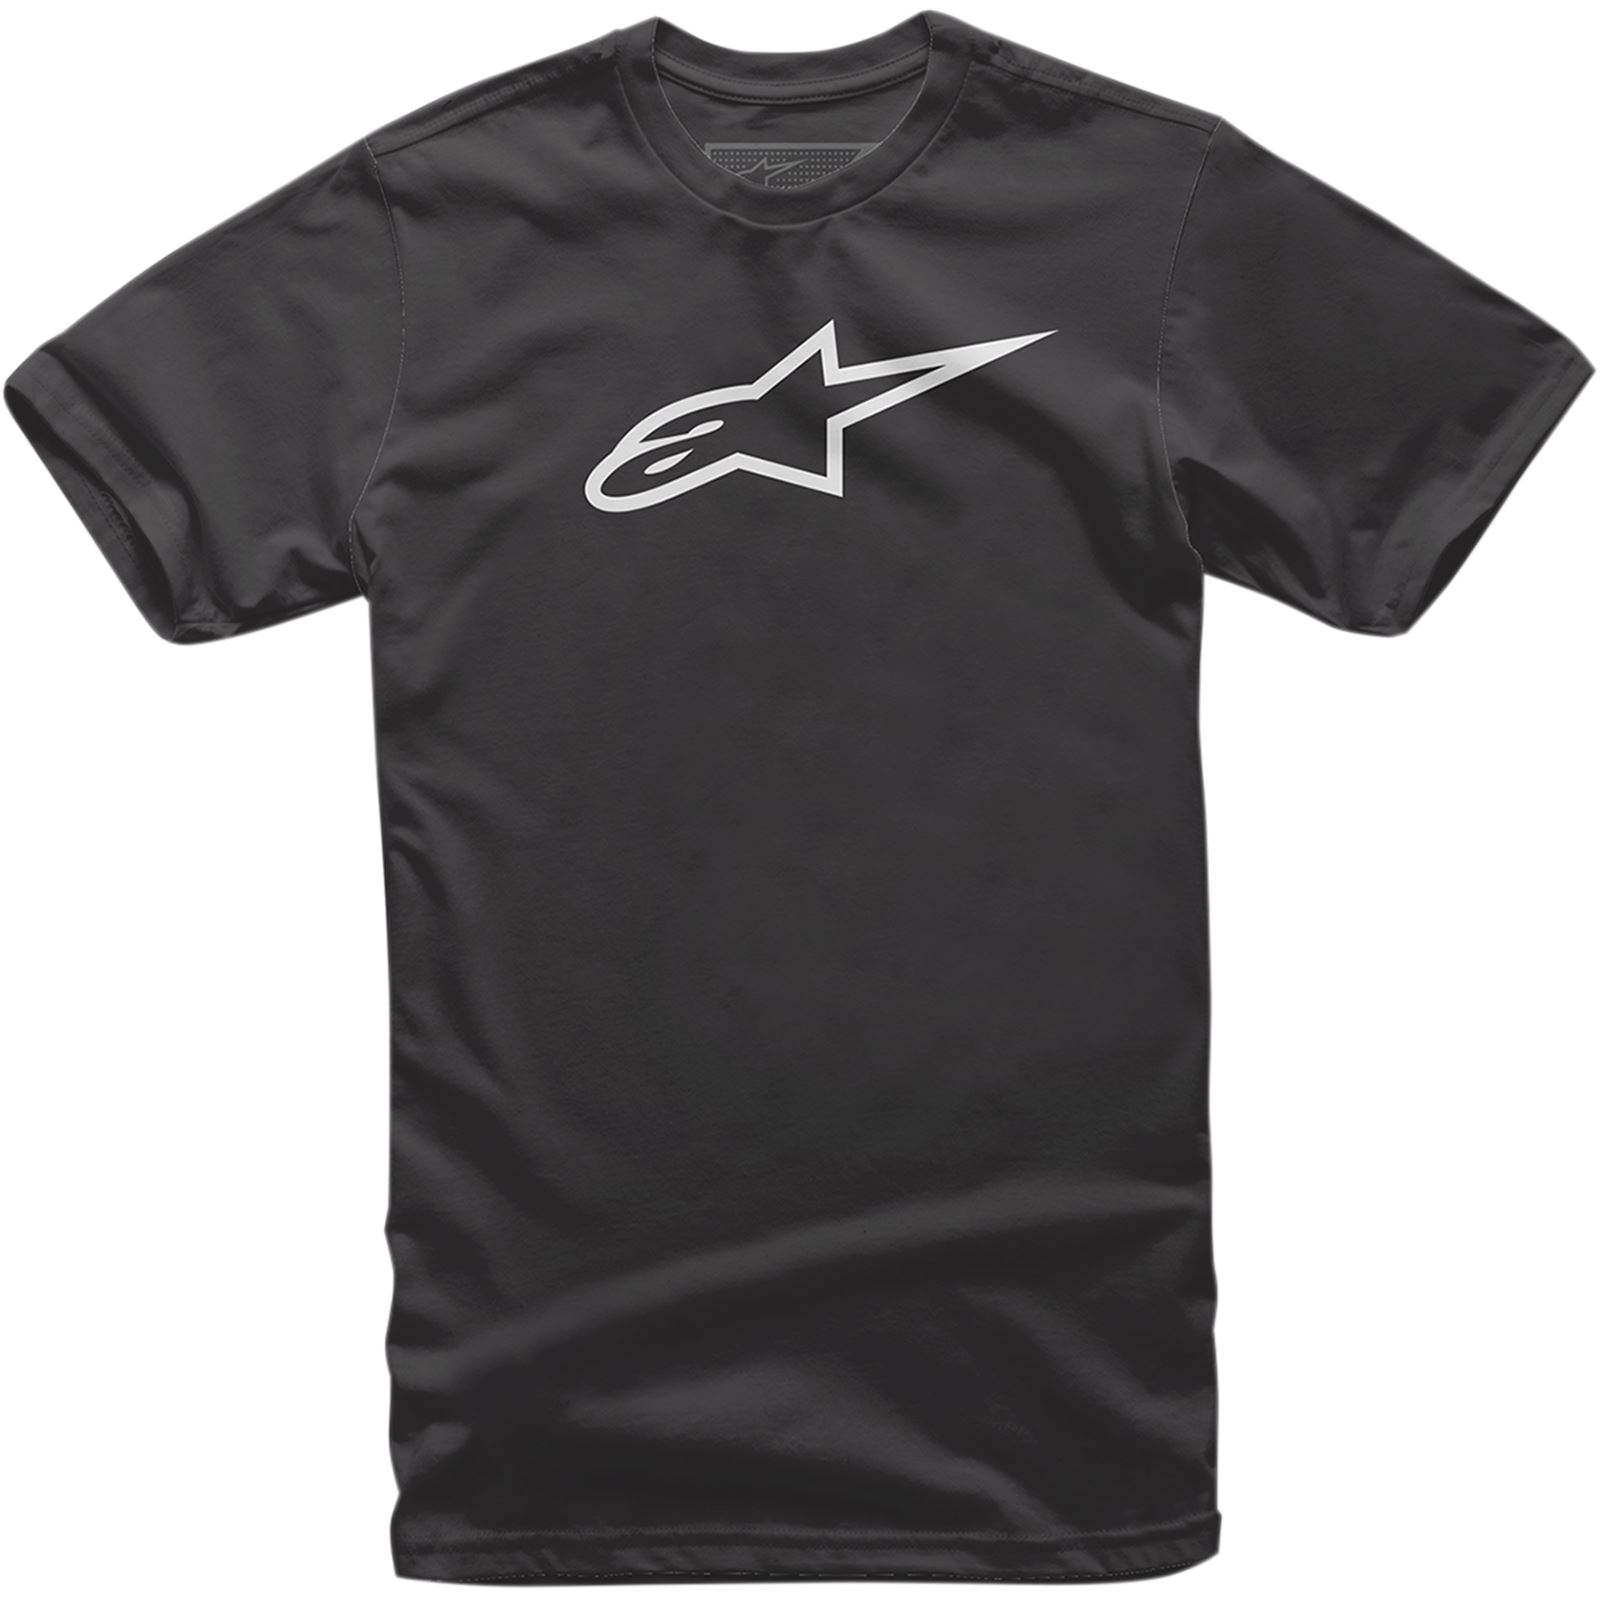 Alpinestars Youth Age T-Shirt - Black/White - Large